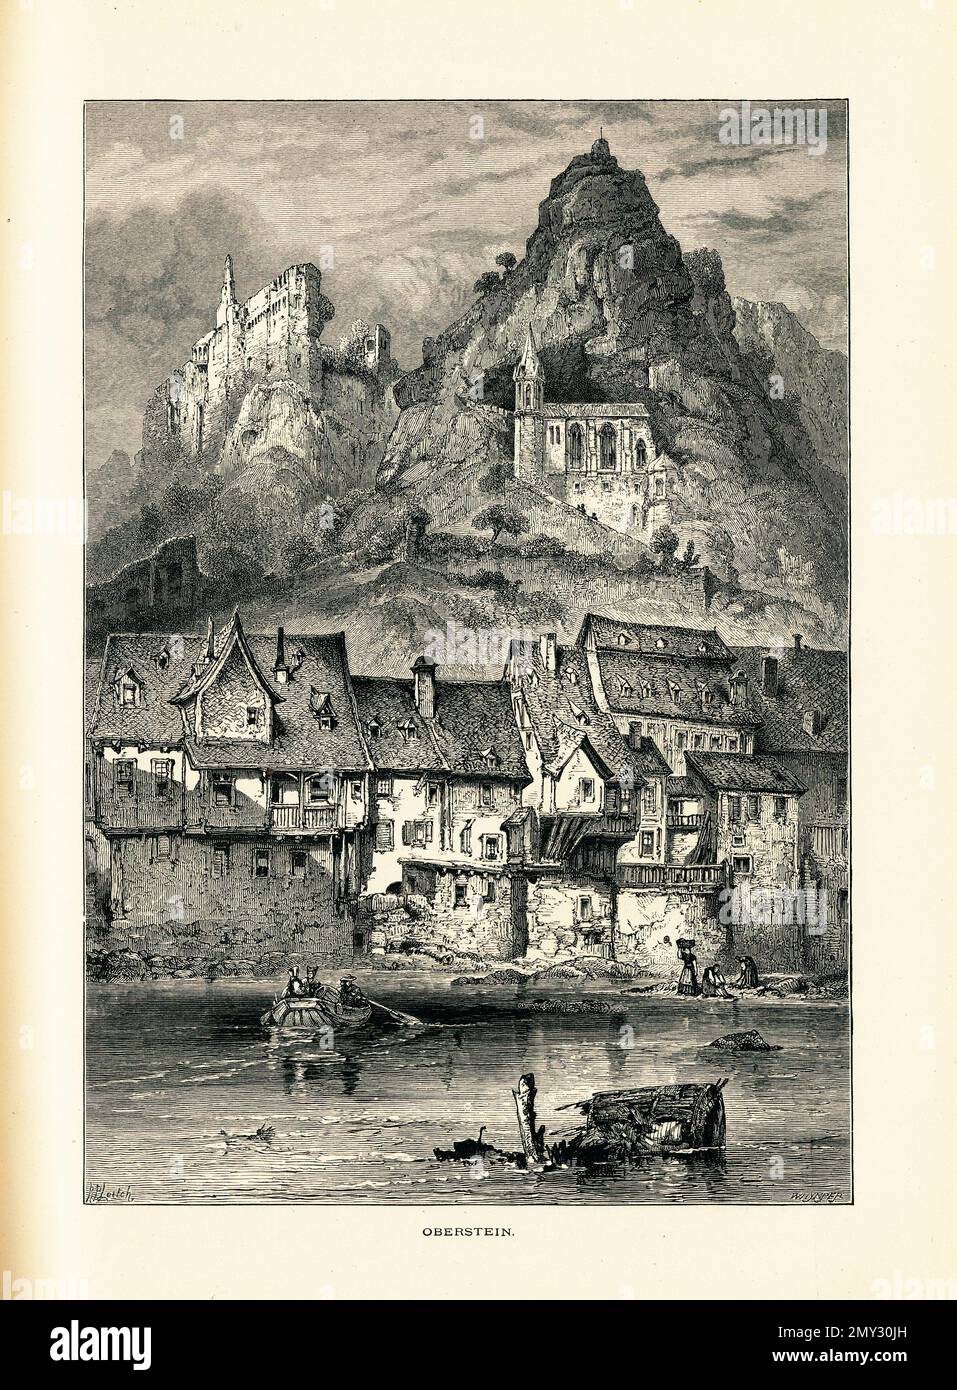 Illustrazione del 19th° secolo di Idar-Oberstein, una città della Renania-Palatinato, Germania. Incisione pubblicata in picturesque Europe, Vol. III (Cassell e C. Foto Stock